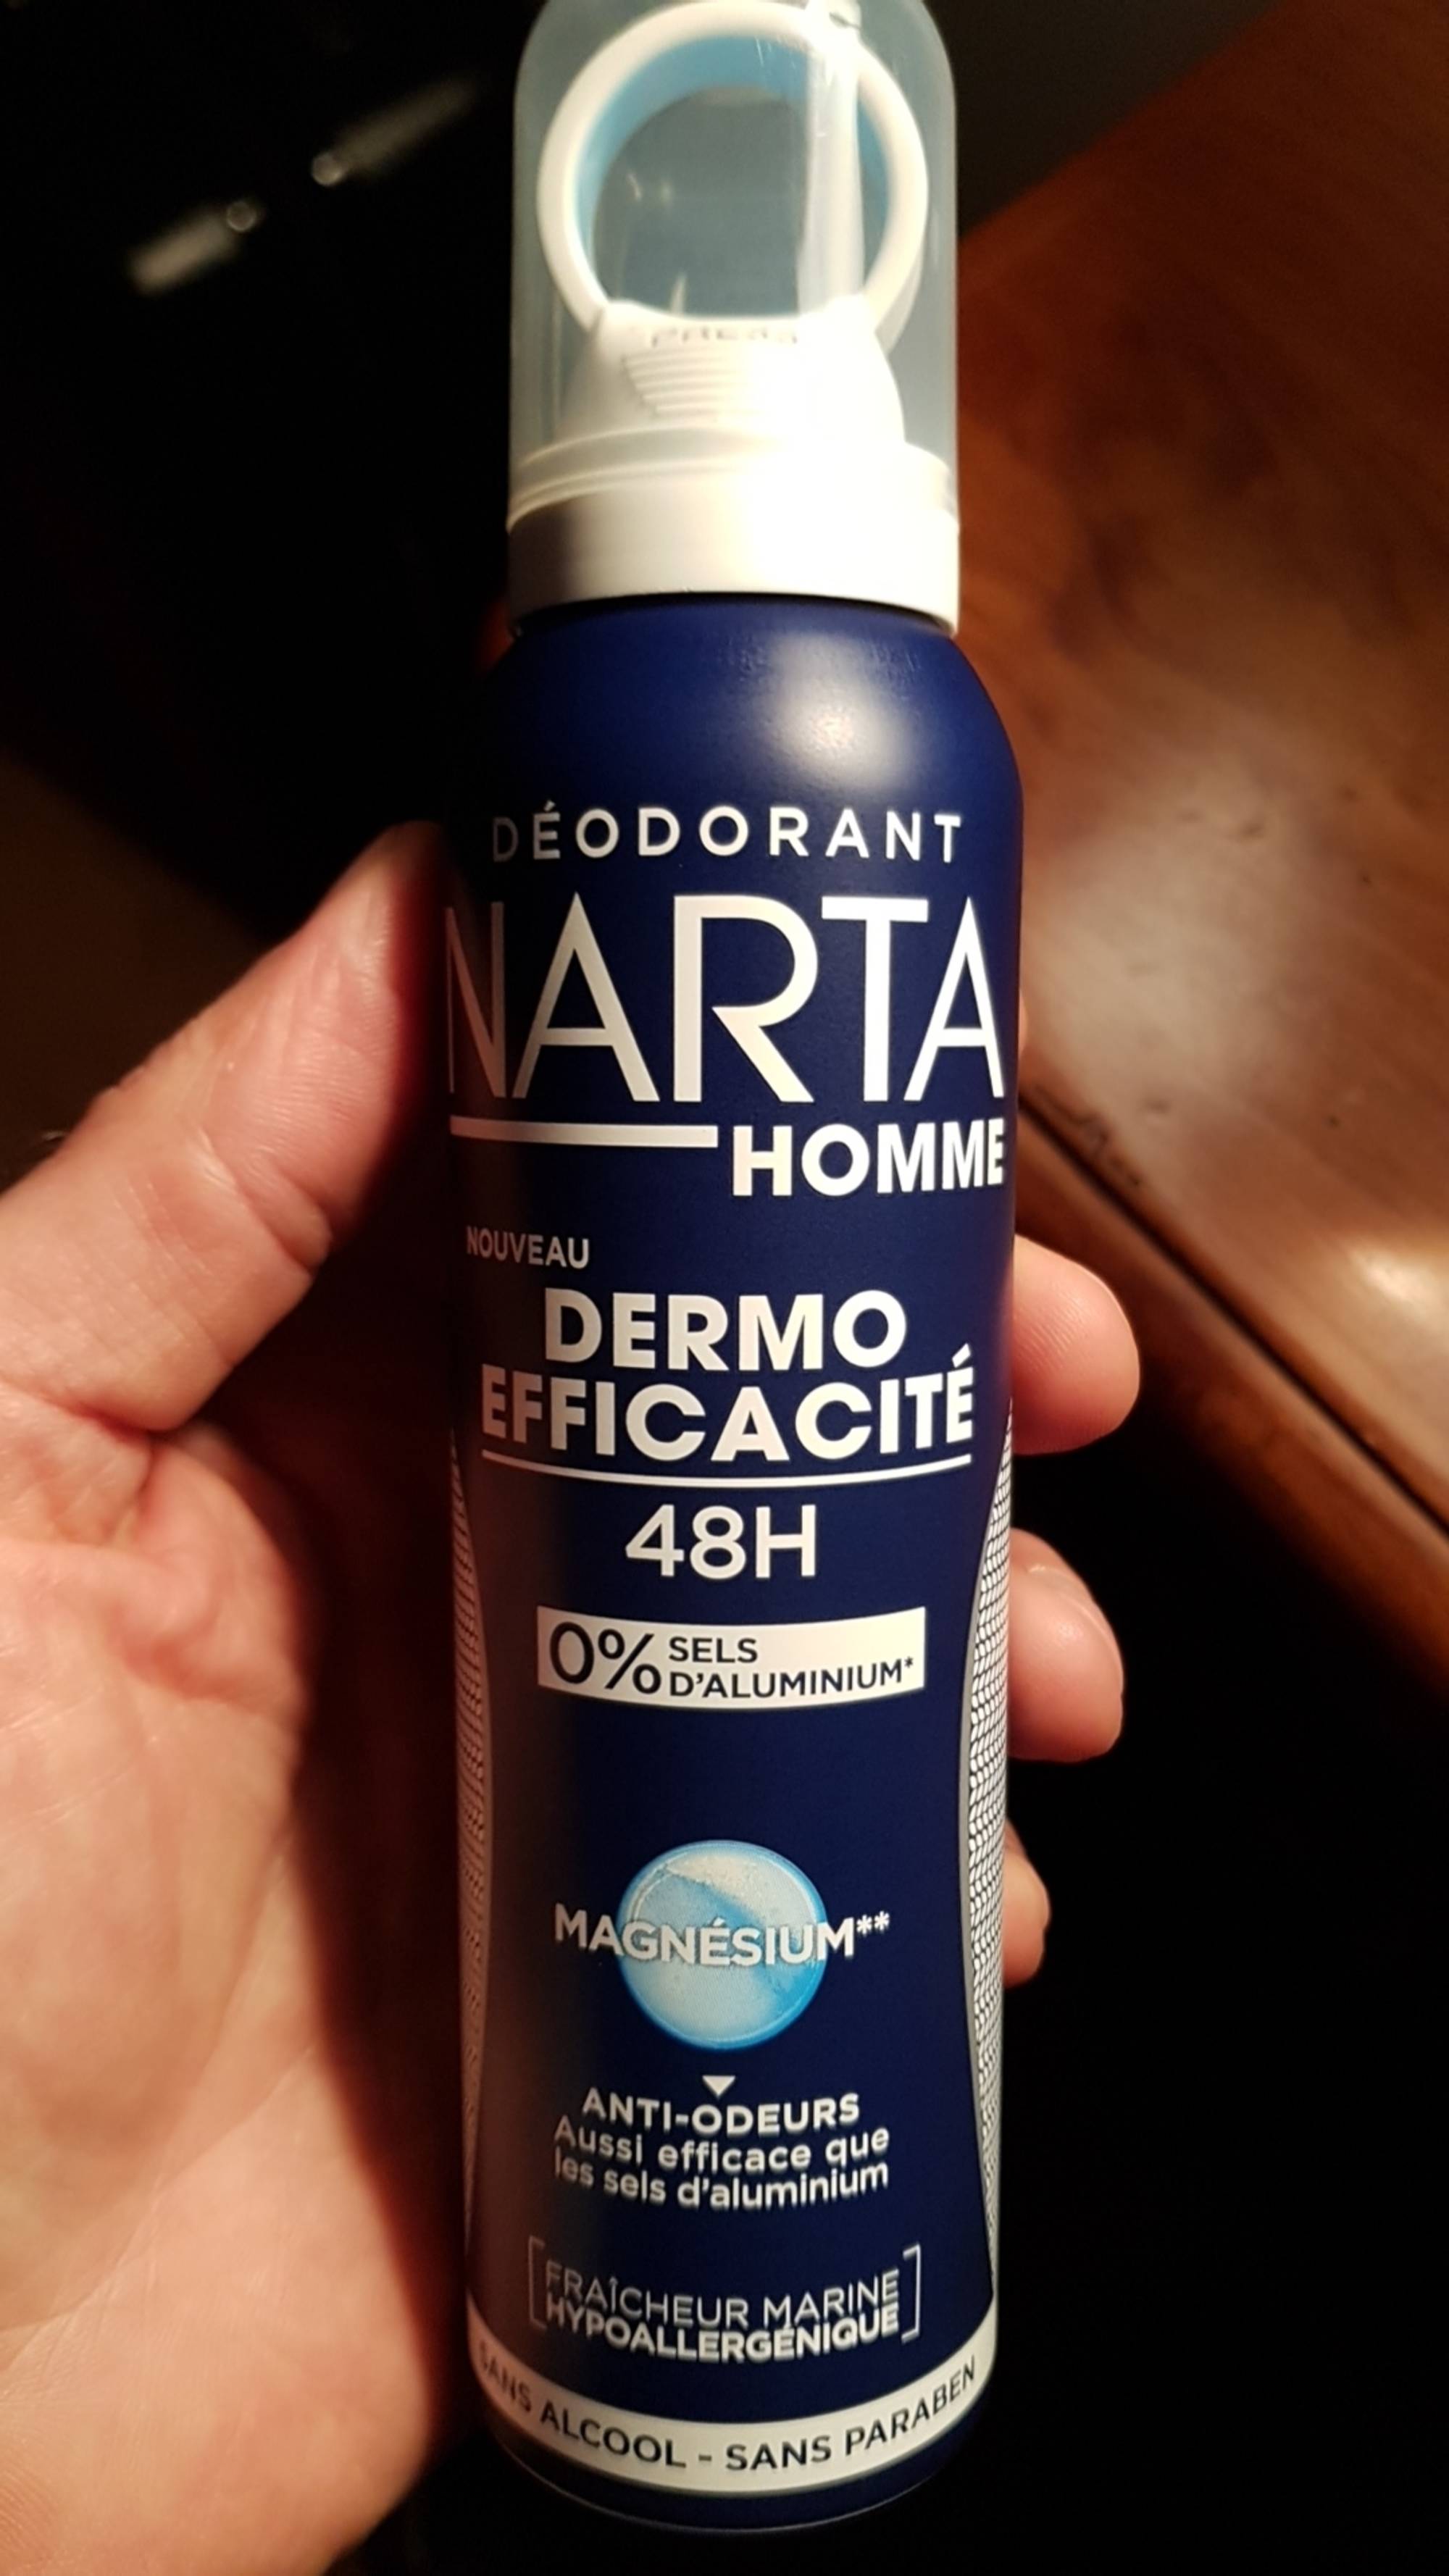 NARTA - Déodorant homme dermo efficacité 48h